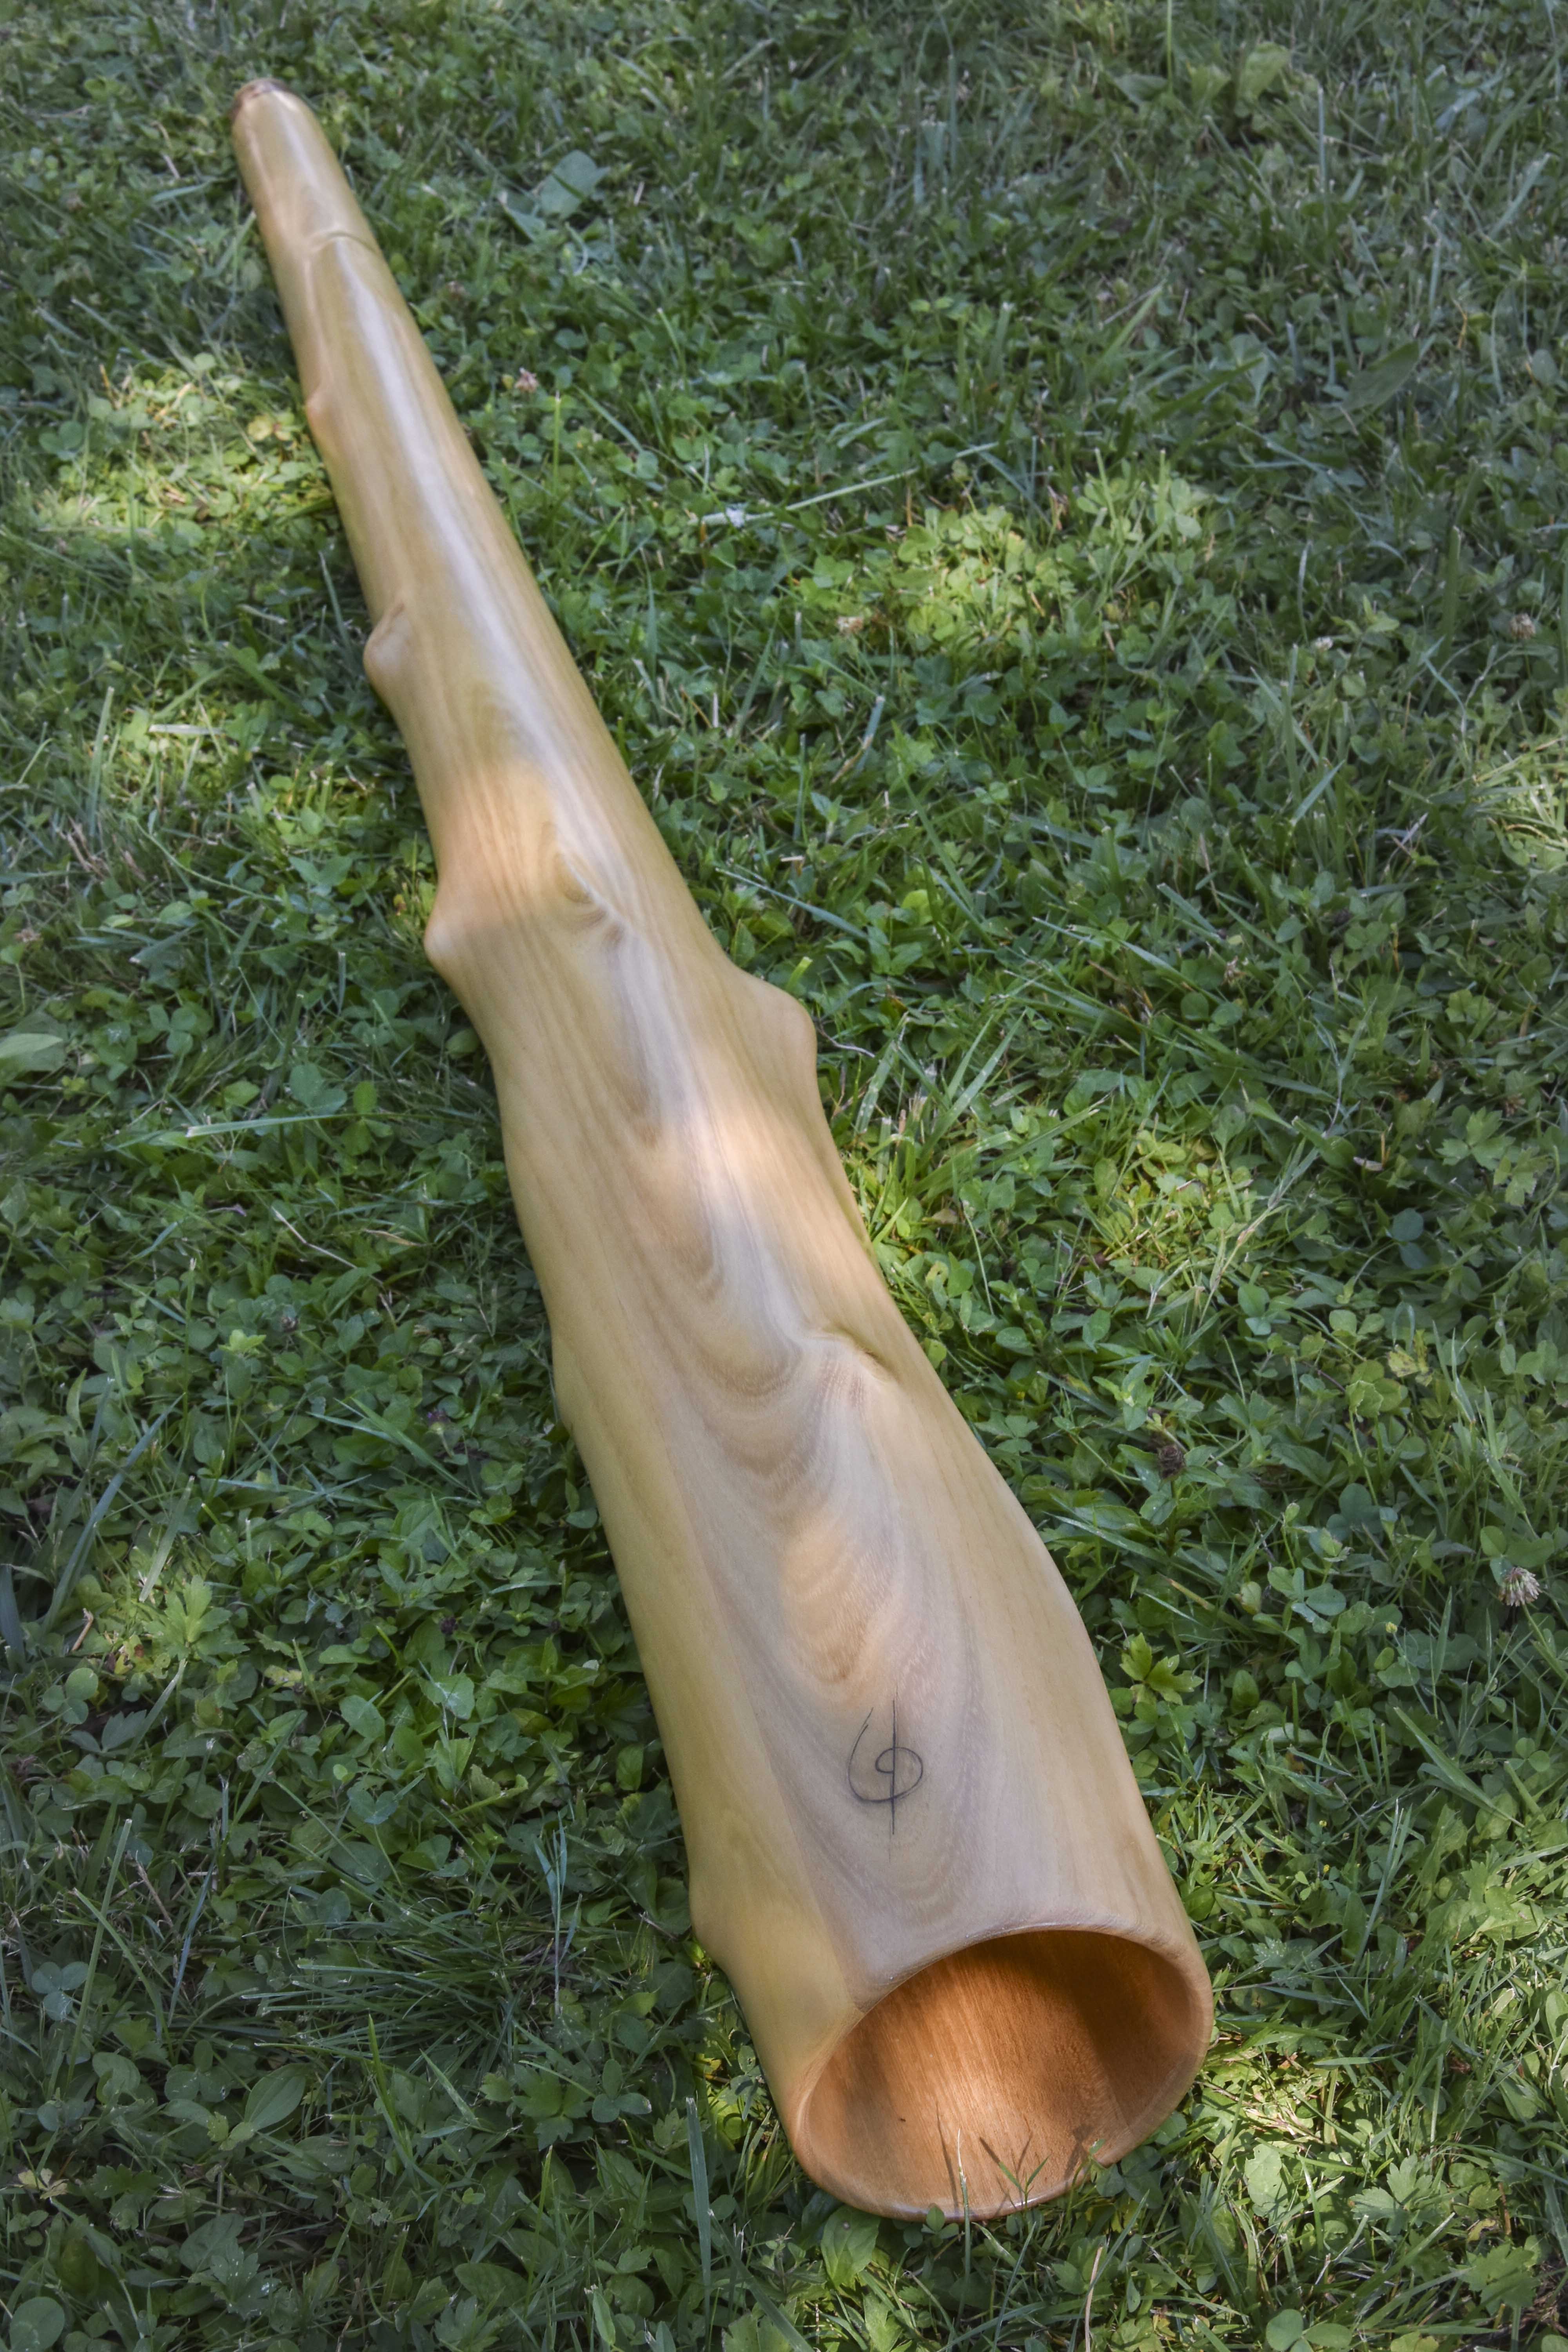 Didgeridoo, en Ré#, fabriqué en bois de robinier avec une cloche ronde